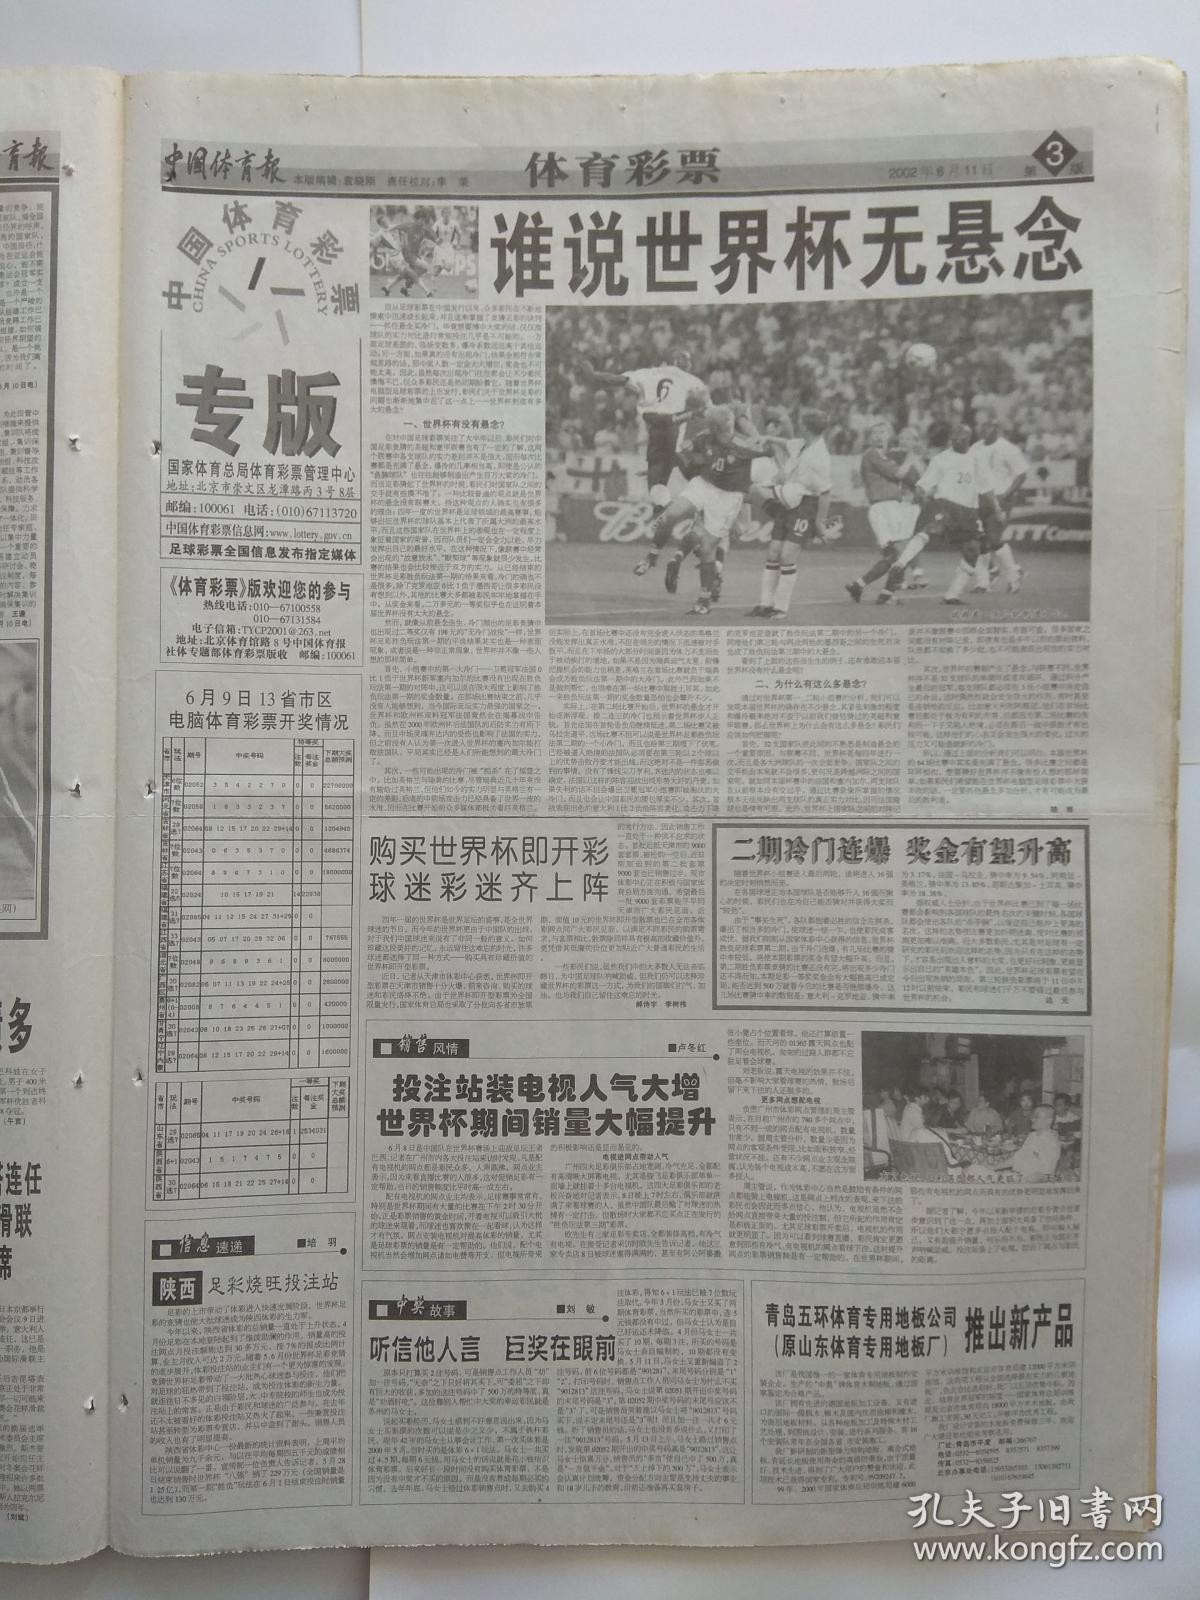 世界杯特刊、中国体育报2002年6月11日【存1-4版】纪念毛主席题词50周年